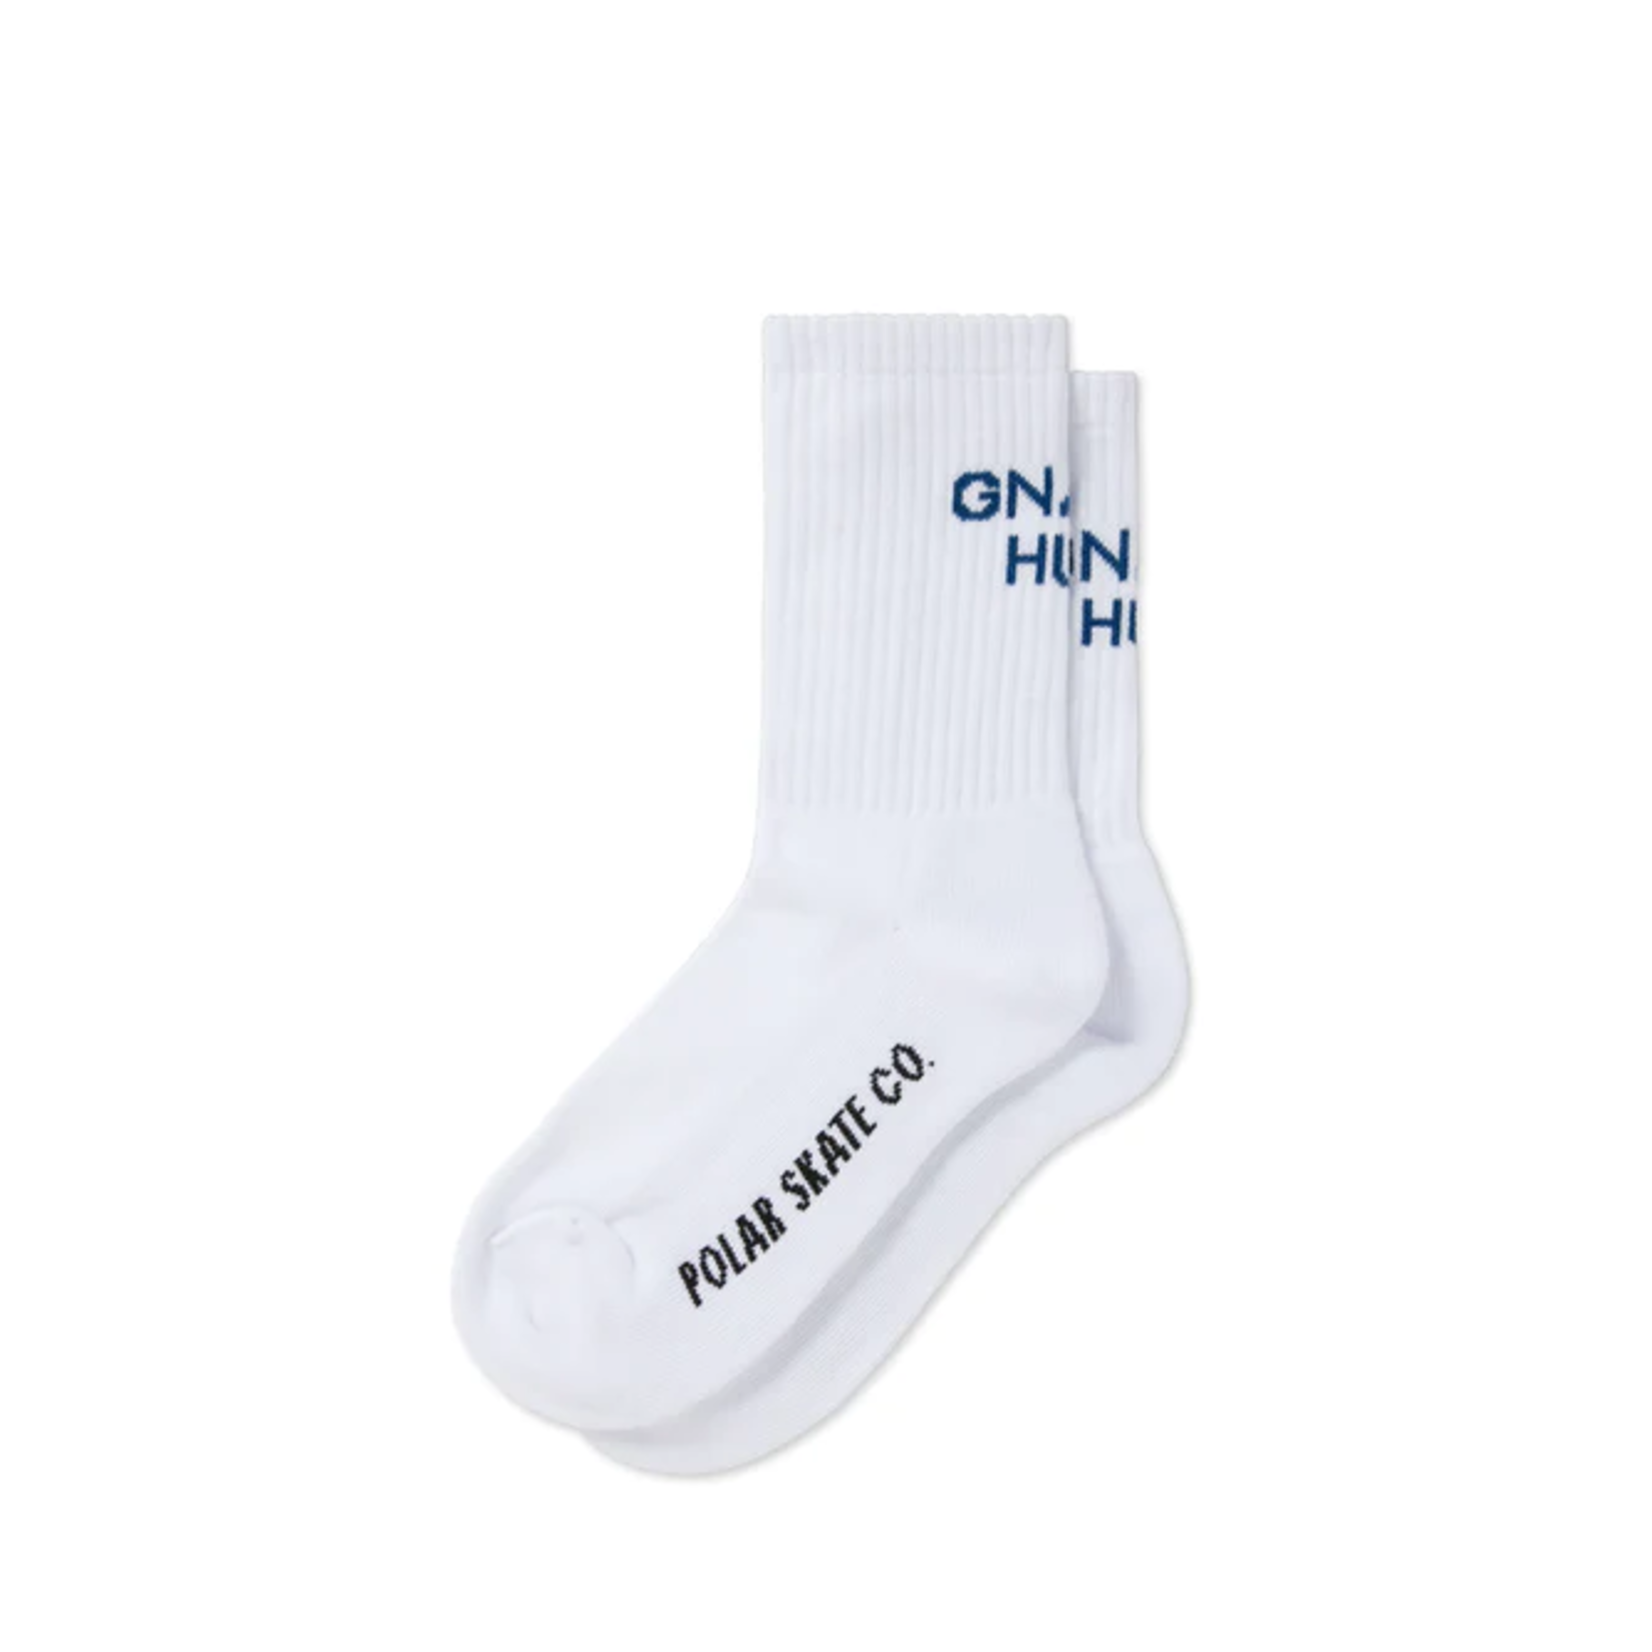 Polar Polar Gnarly Huh Socks - White/Blue (39/42)